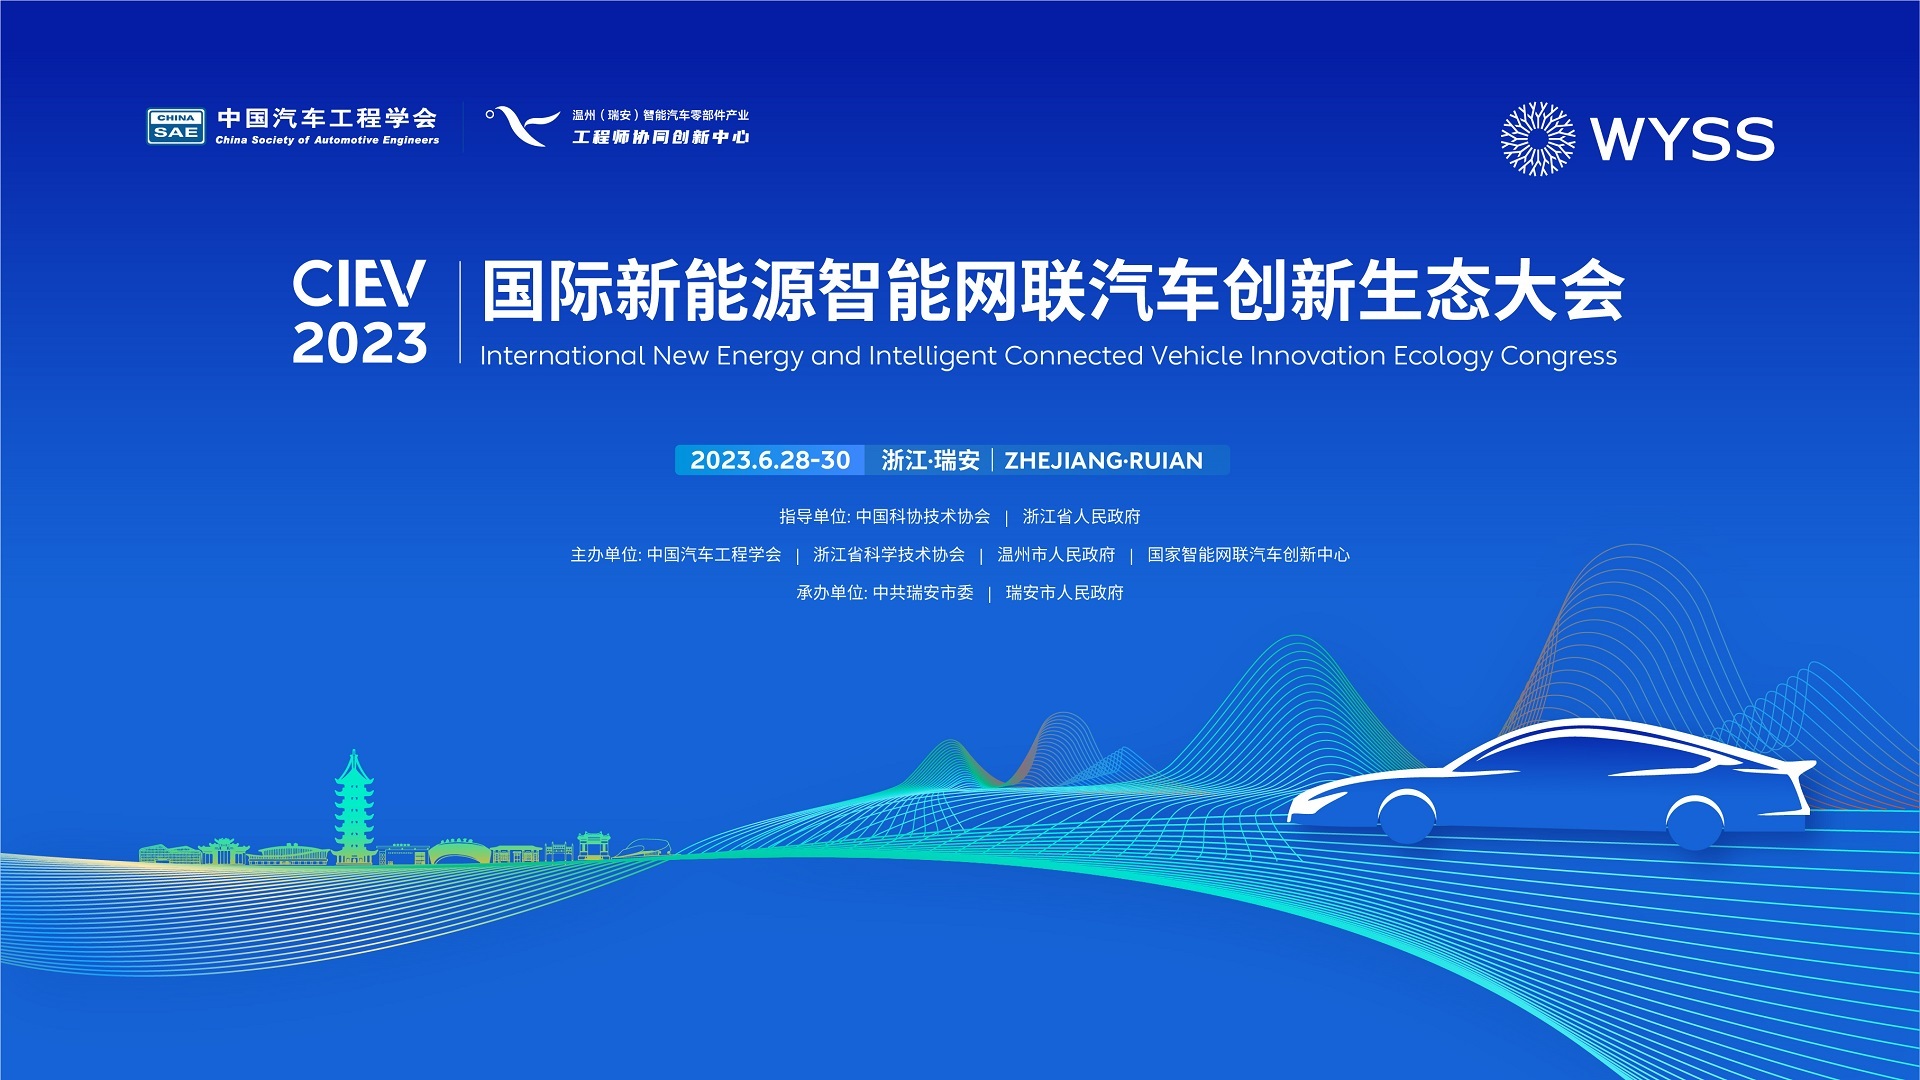 2023国际新能源智能网联汽车创新生态大会